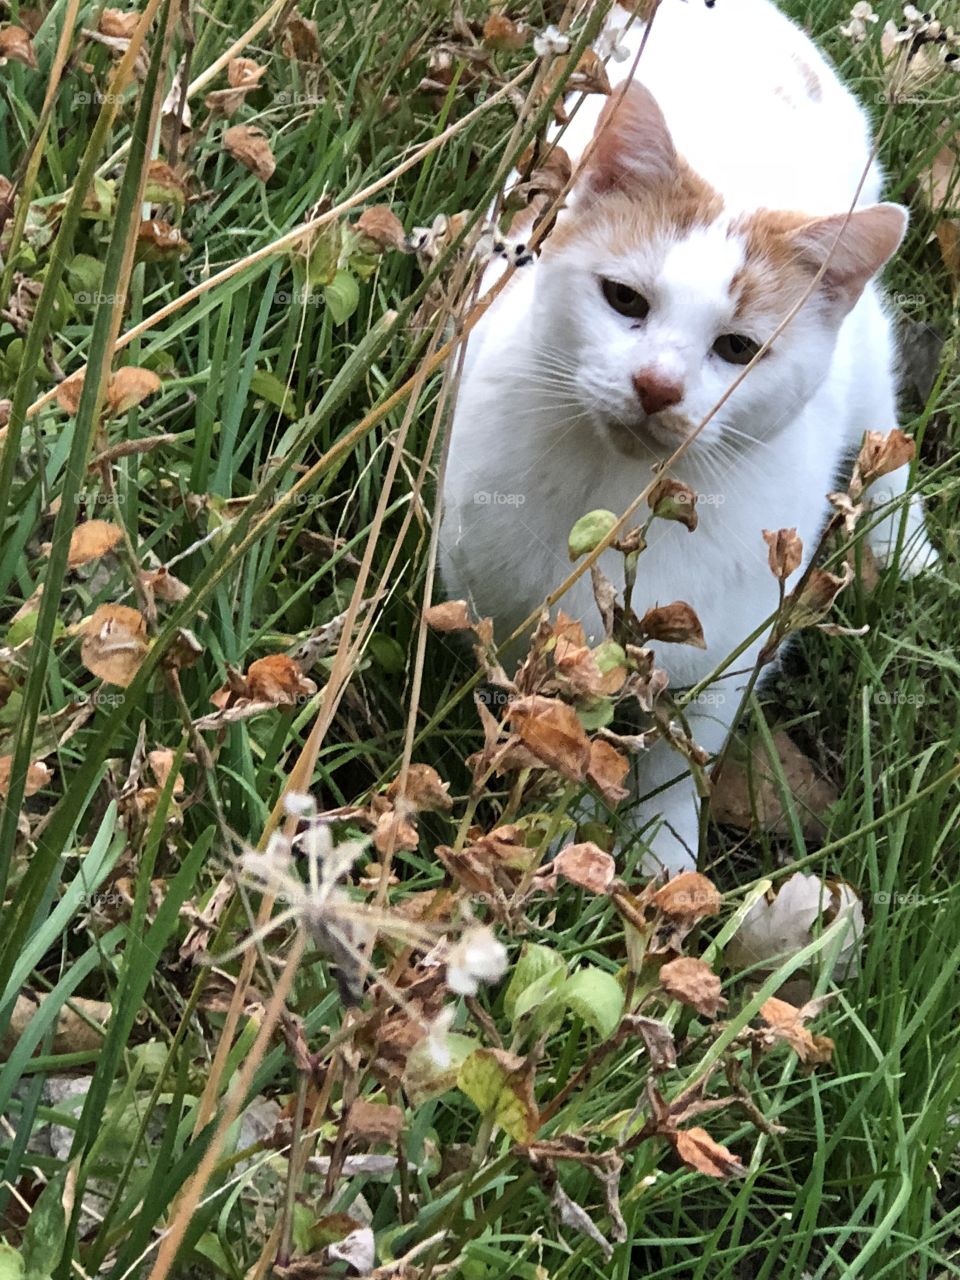 Cat in weeds peeking